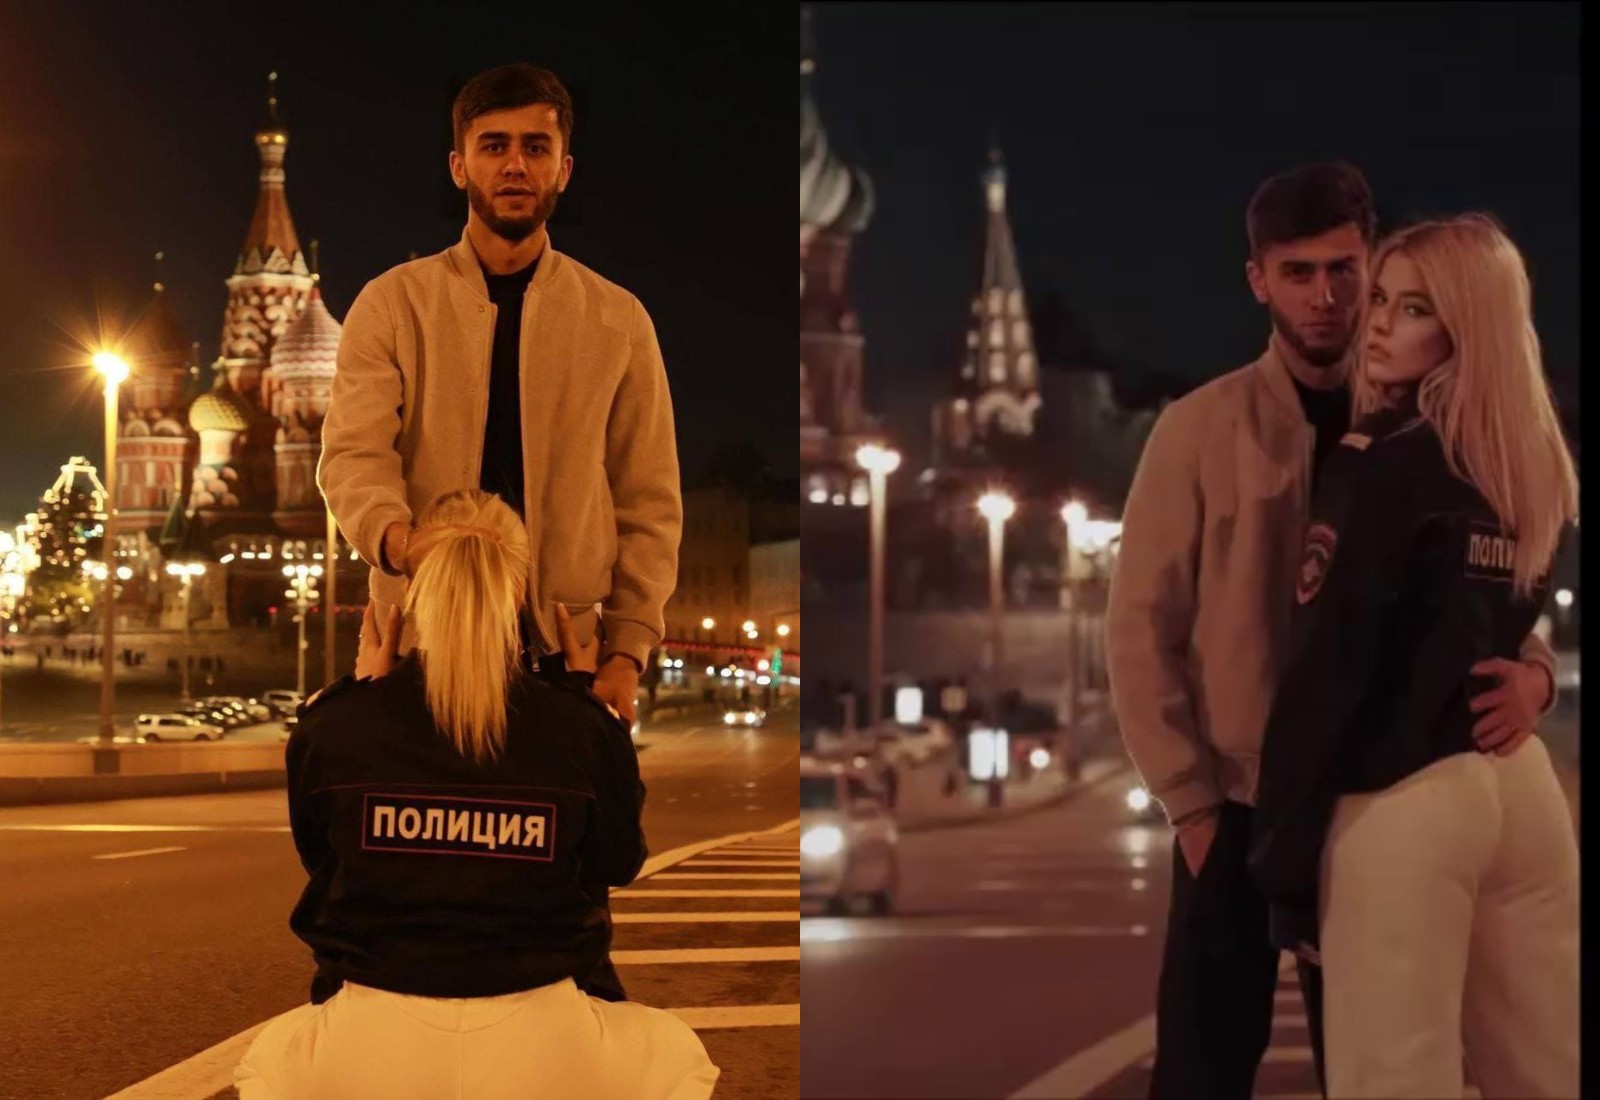 Девушки Ищущие Секс В Москве Бесплатно